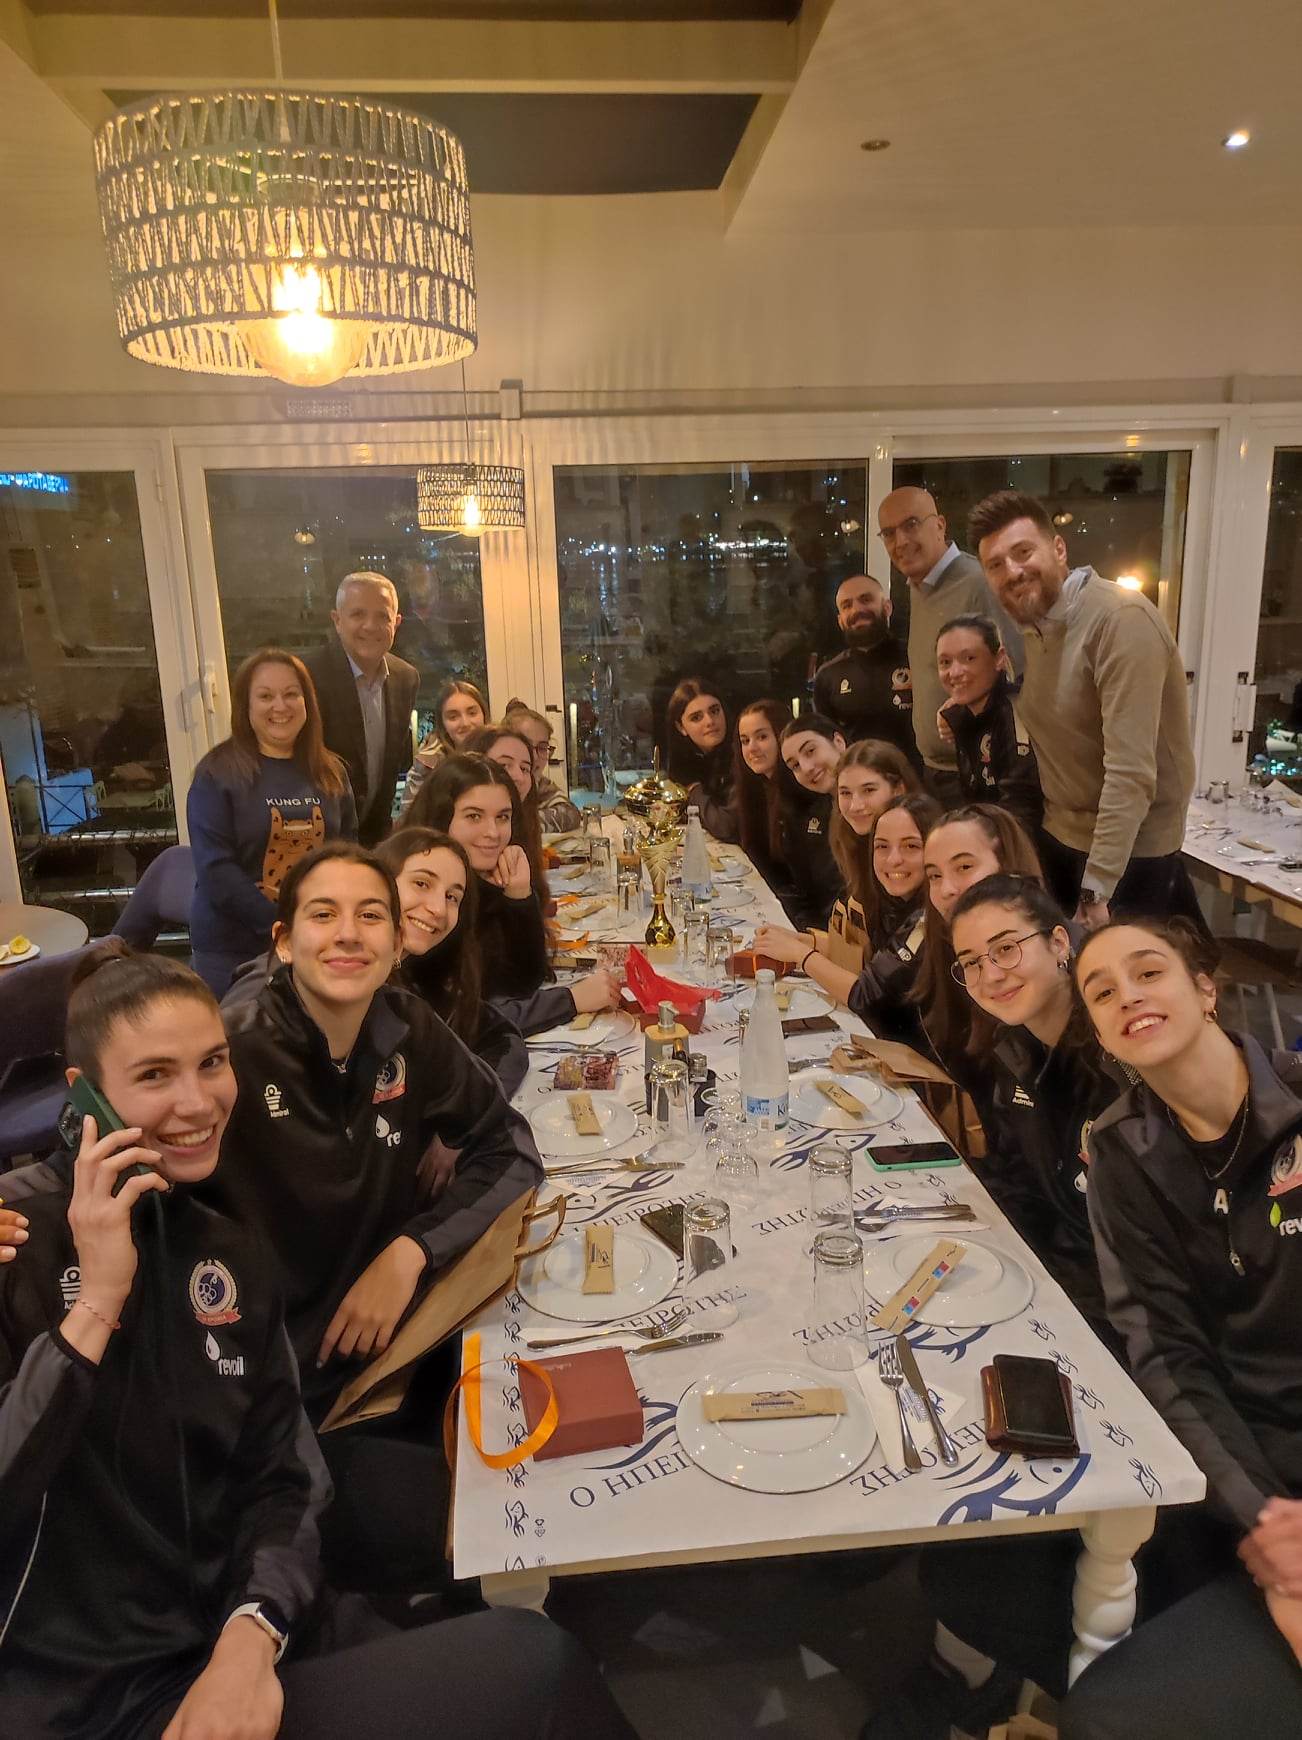 Επίσημο γεύμα παρέθεσε ο Δήμαρχος Μαρκοπούλου στις πρωταθλήτριες του Αθλητικού Ομίλου Μαρκοπούλου